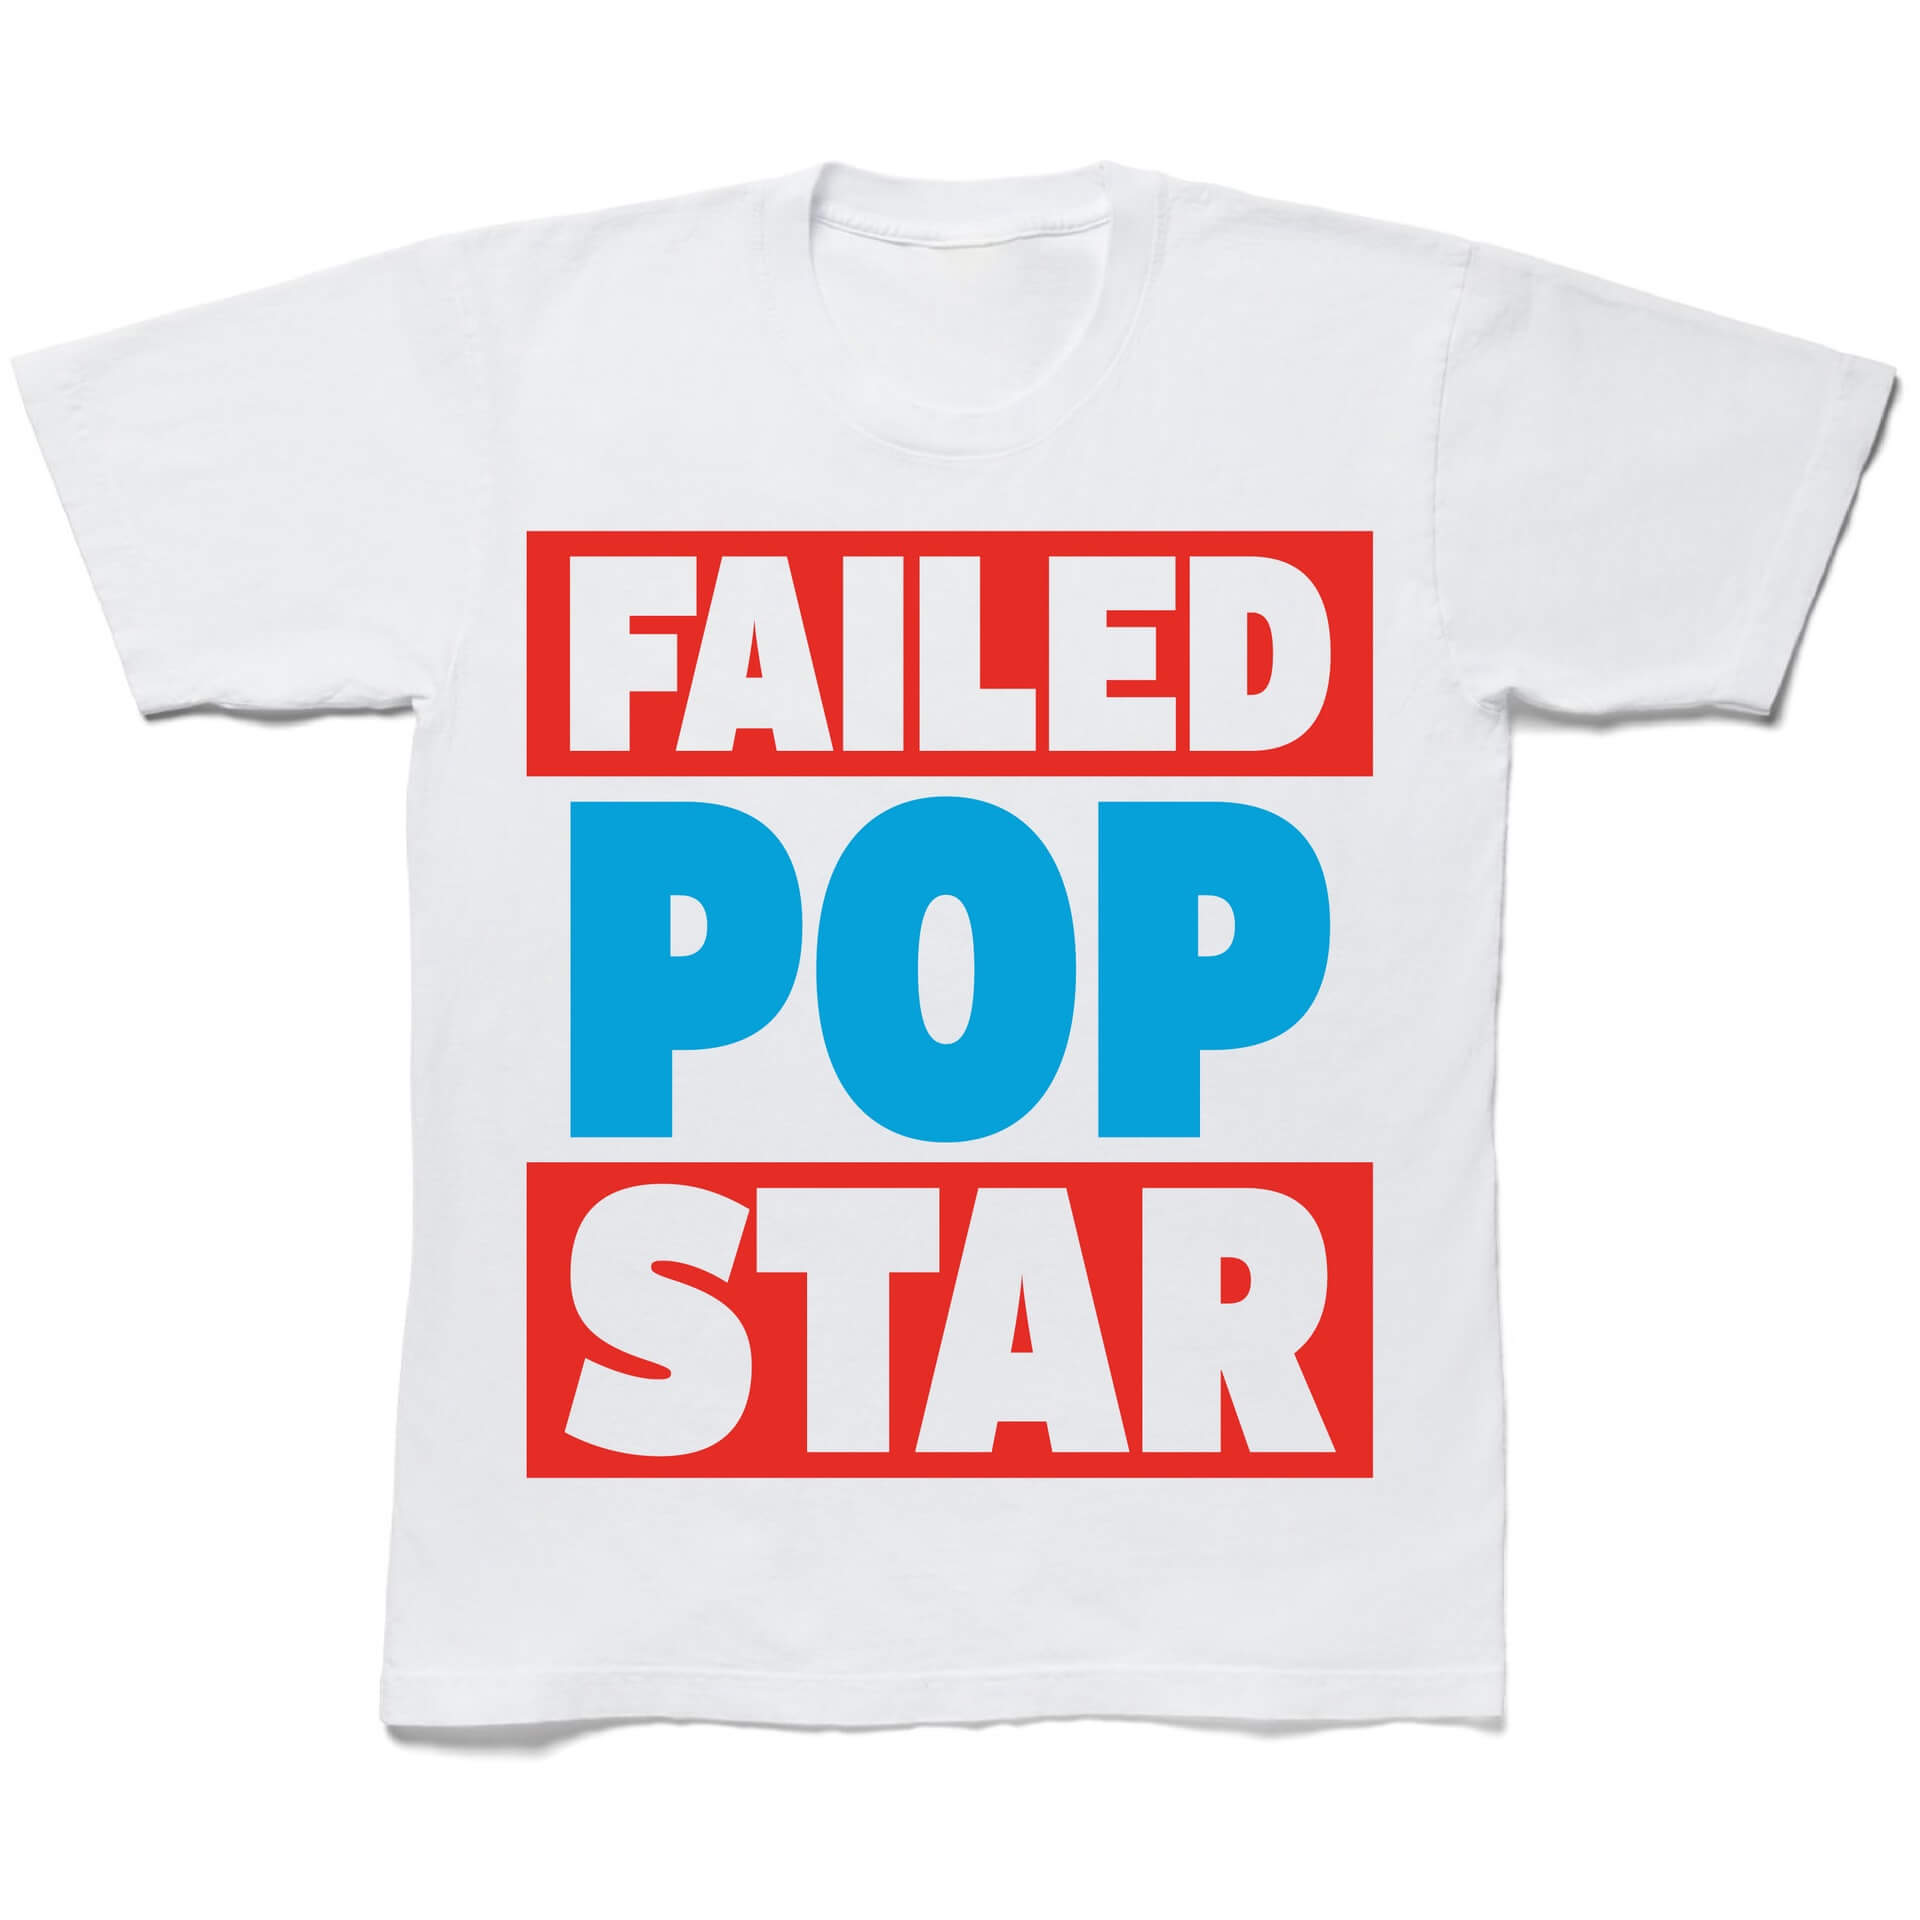 Failed Popstar tee